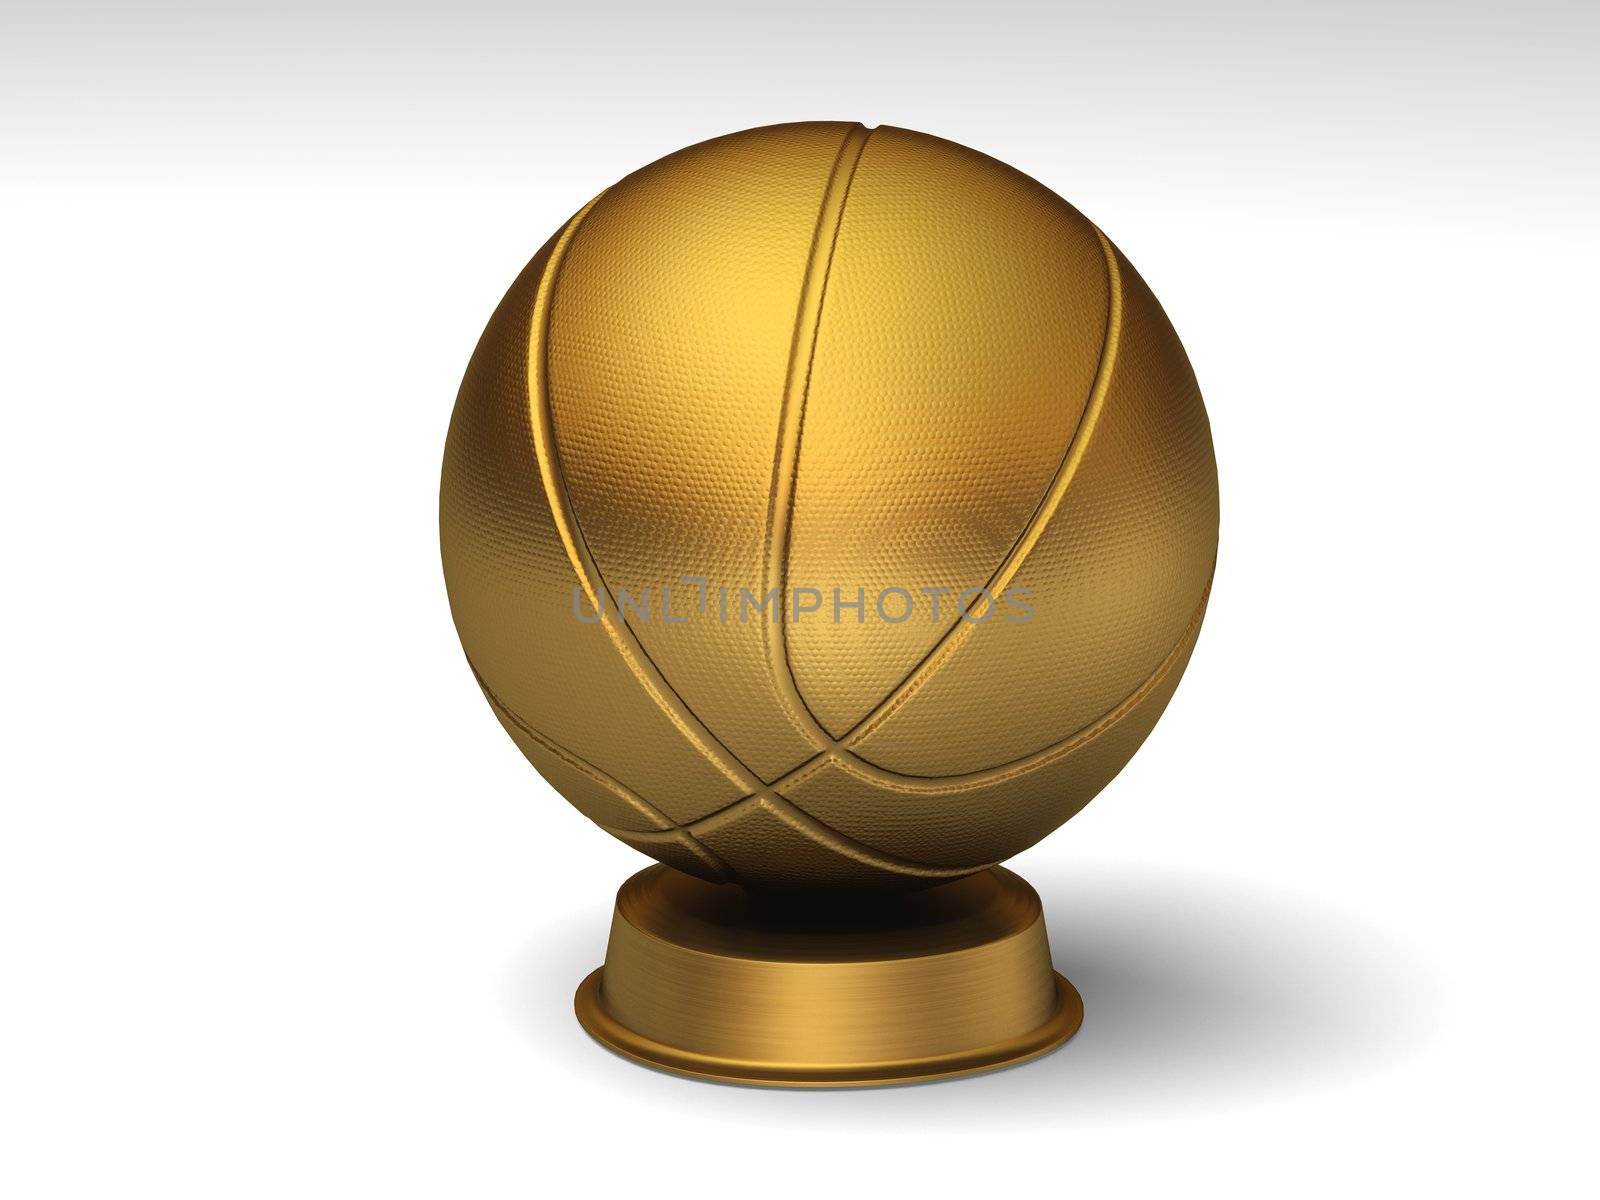 Closeup on a golden basketball trophy